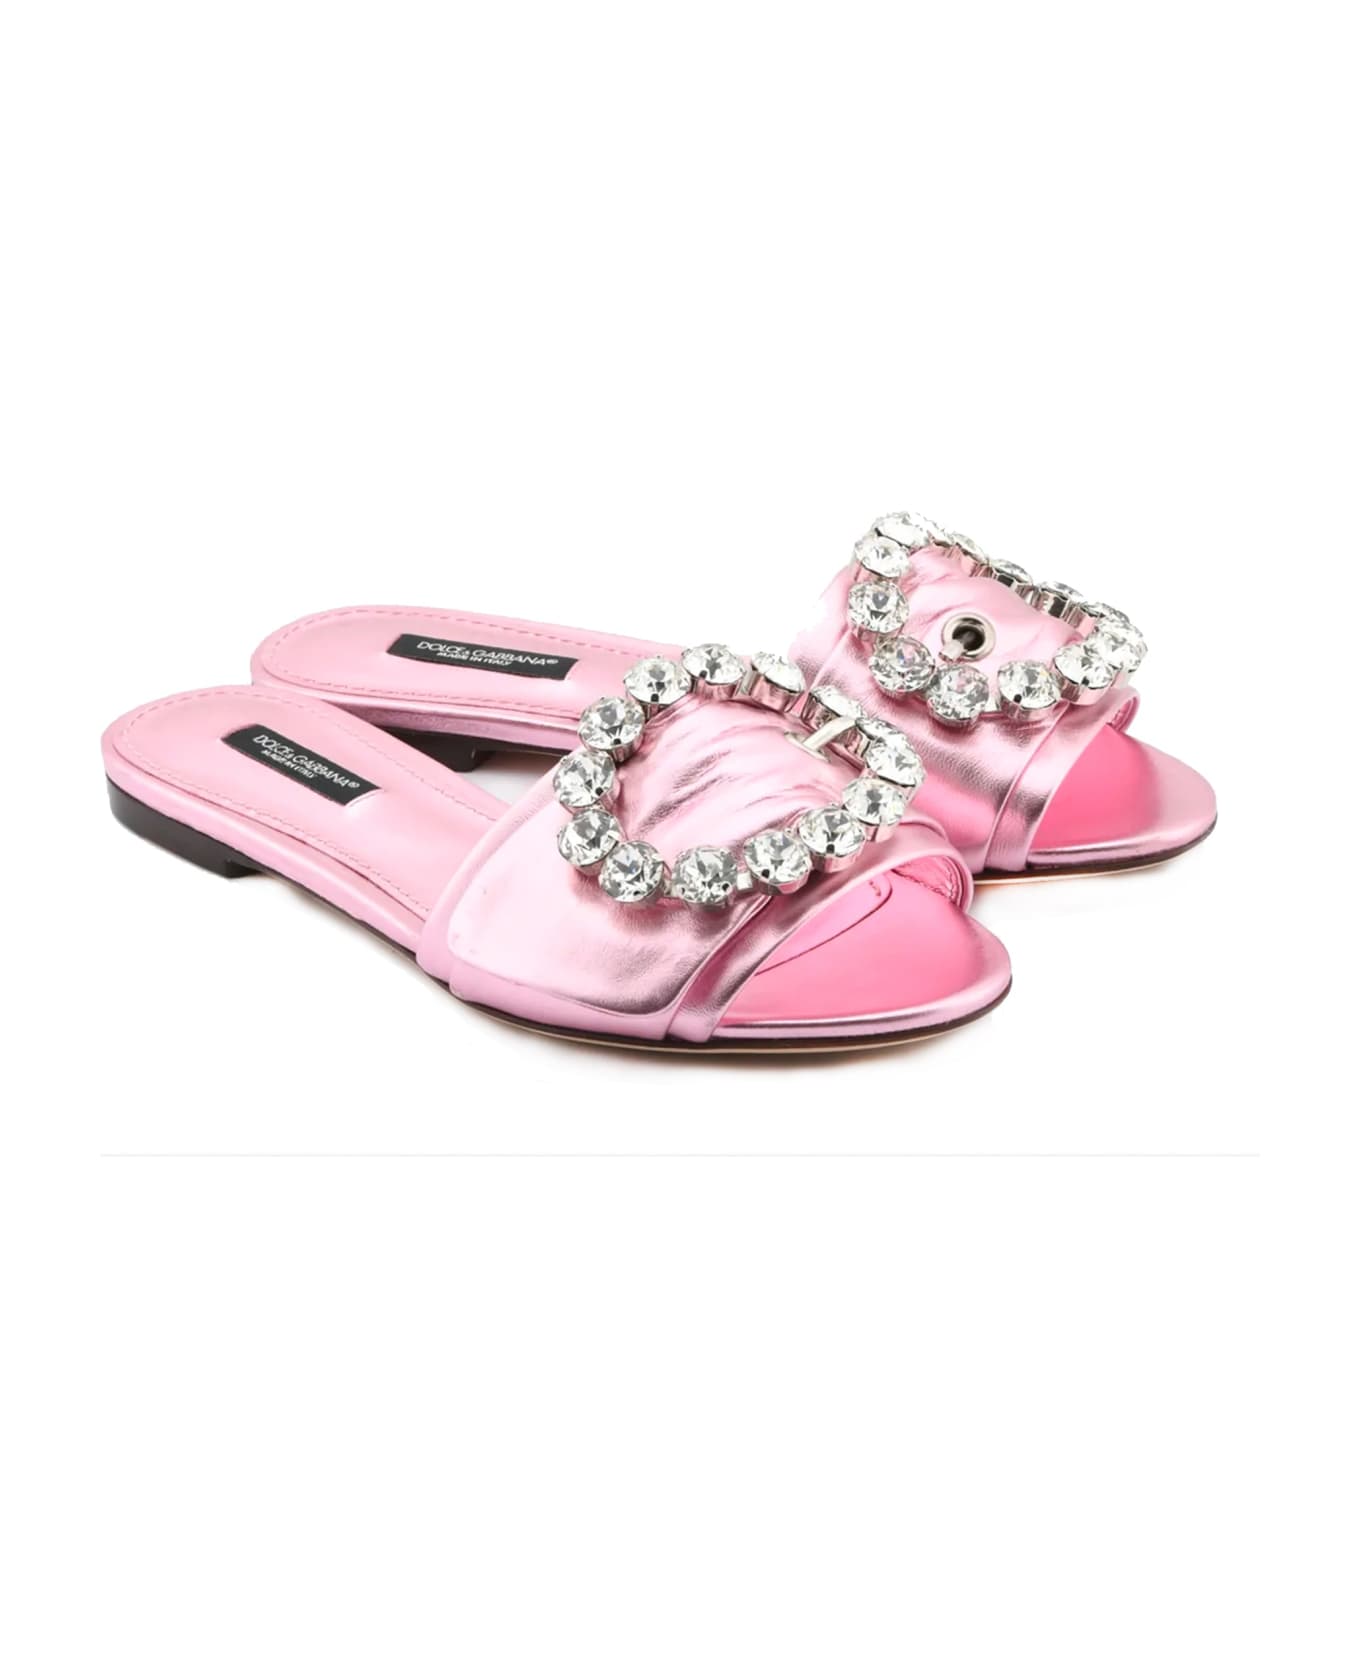 Dolce & Gabbana Crystal Embellished Flats - Pink